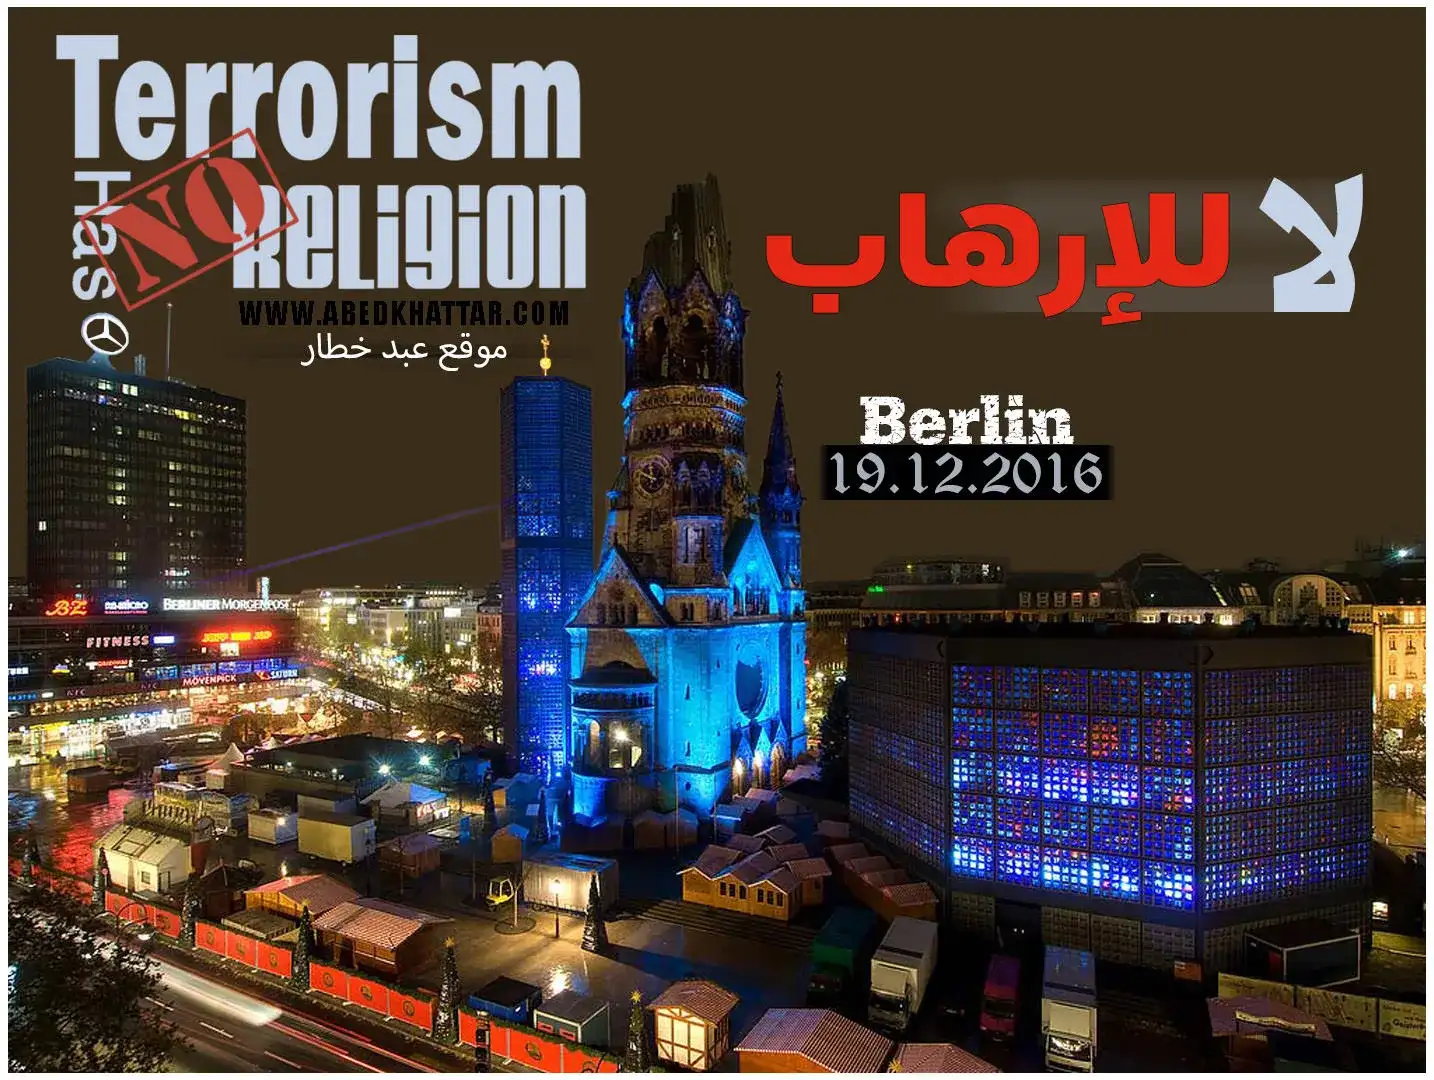 terrorism-has-no-religion-1.webp